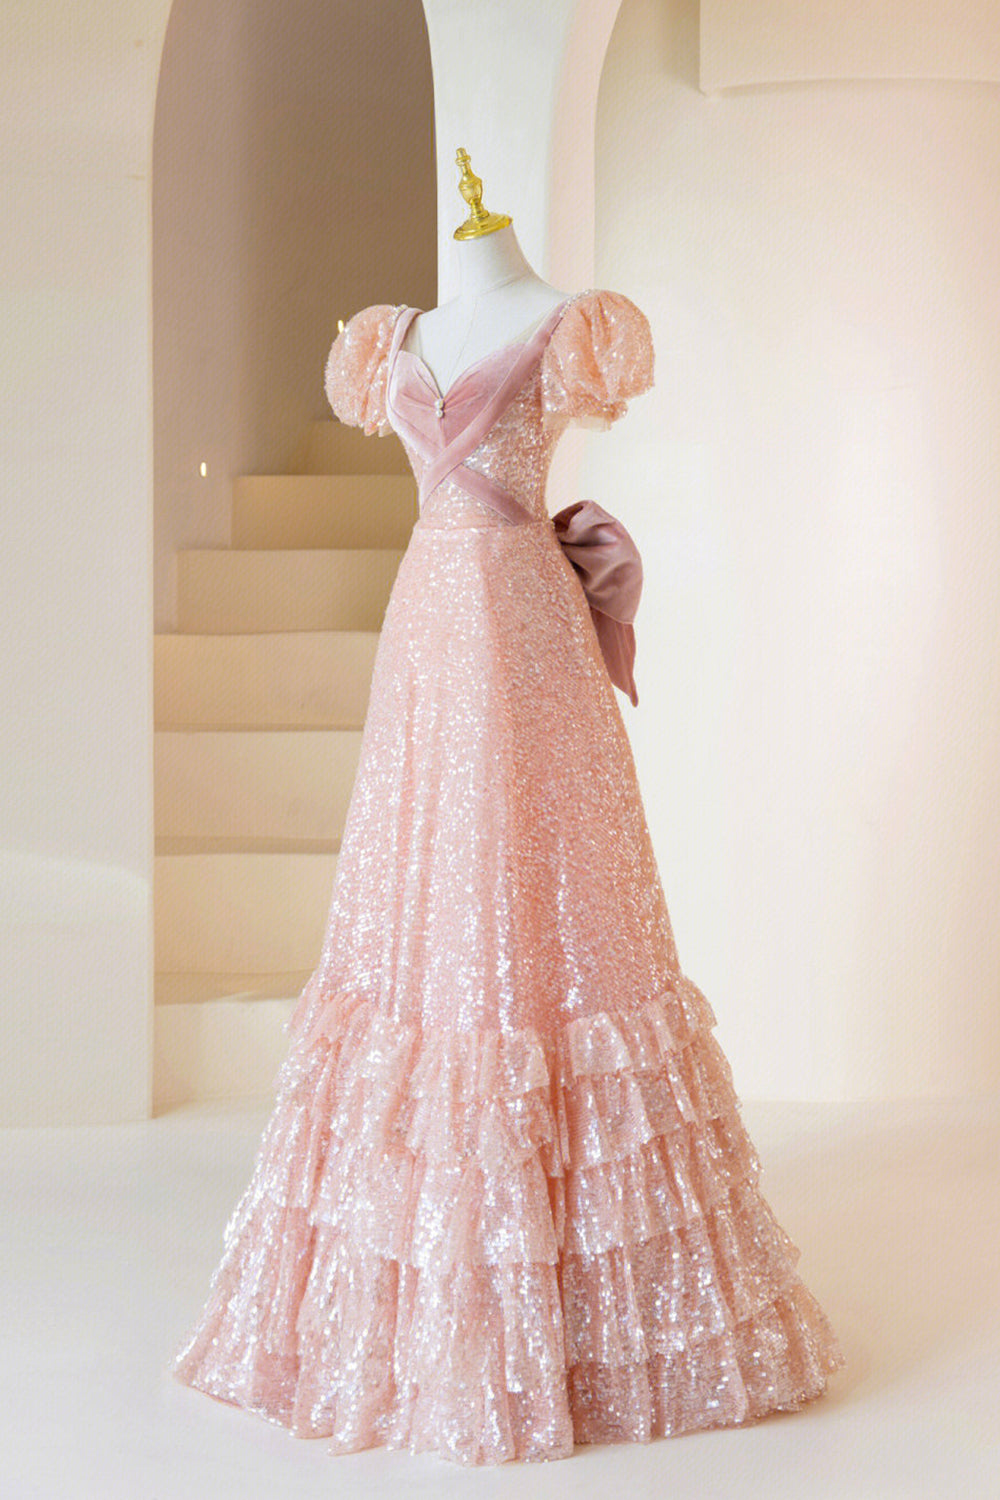 Party Dress Near Me, Pink Sequins Long Prom Dress, A-Line Short Sleeve Evening Dress